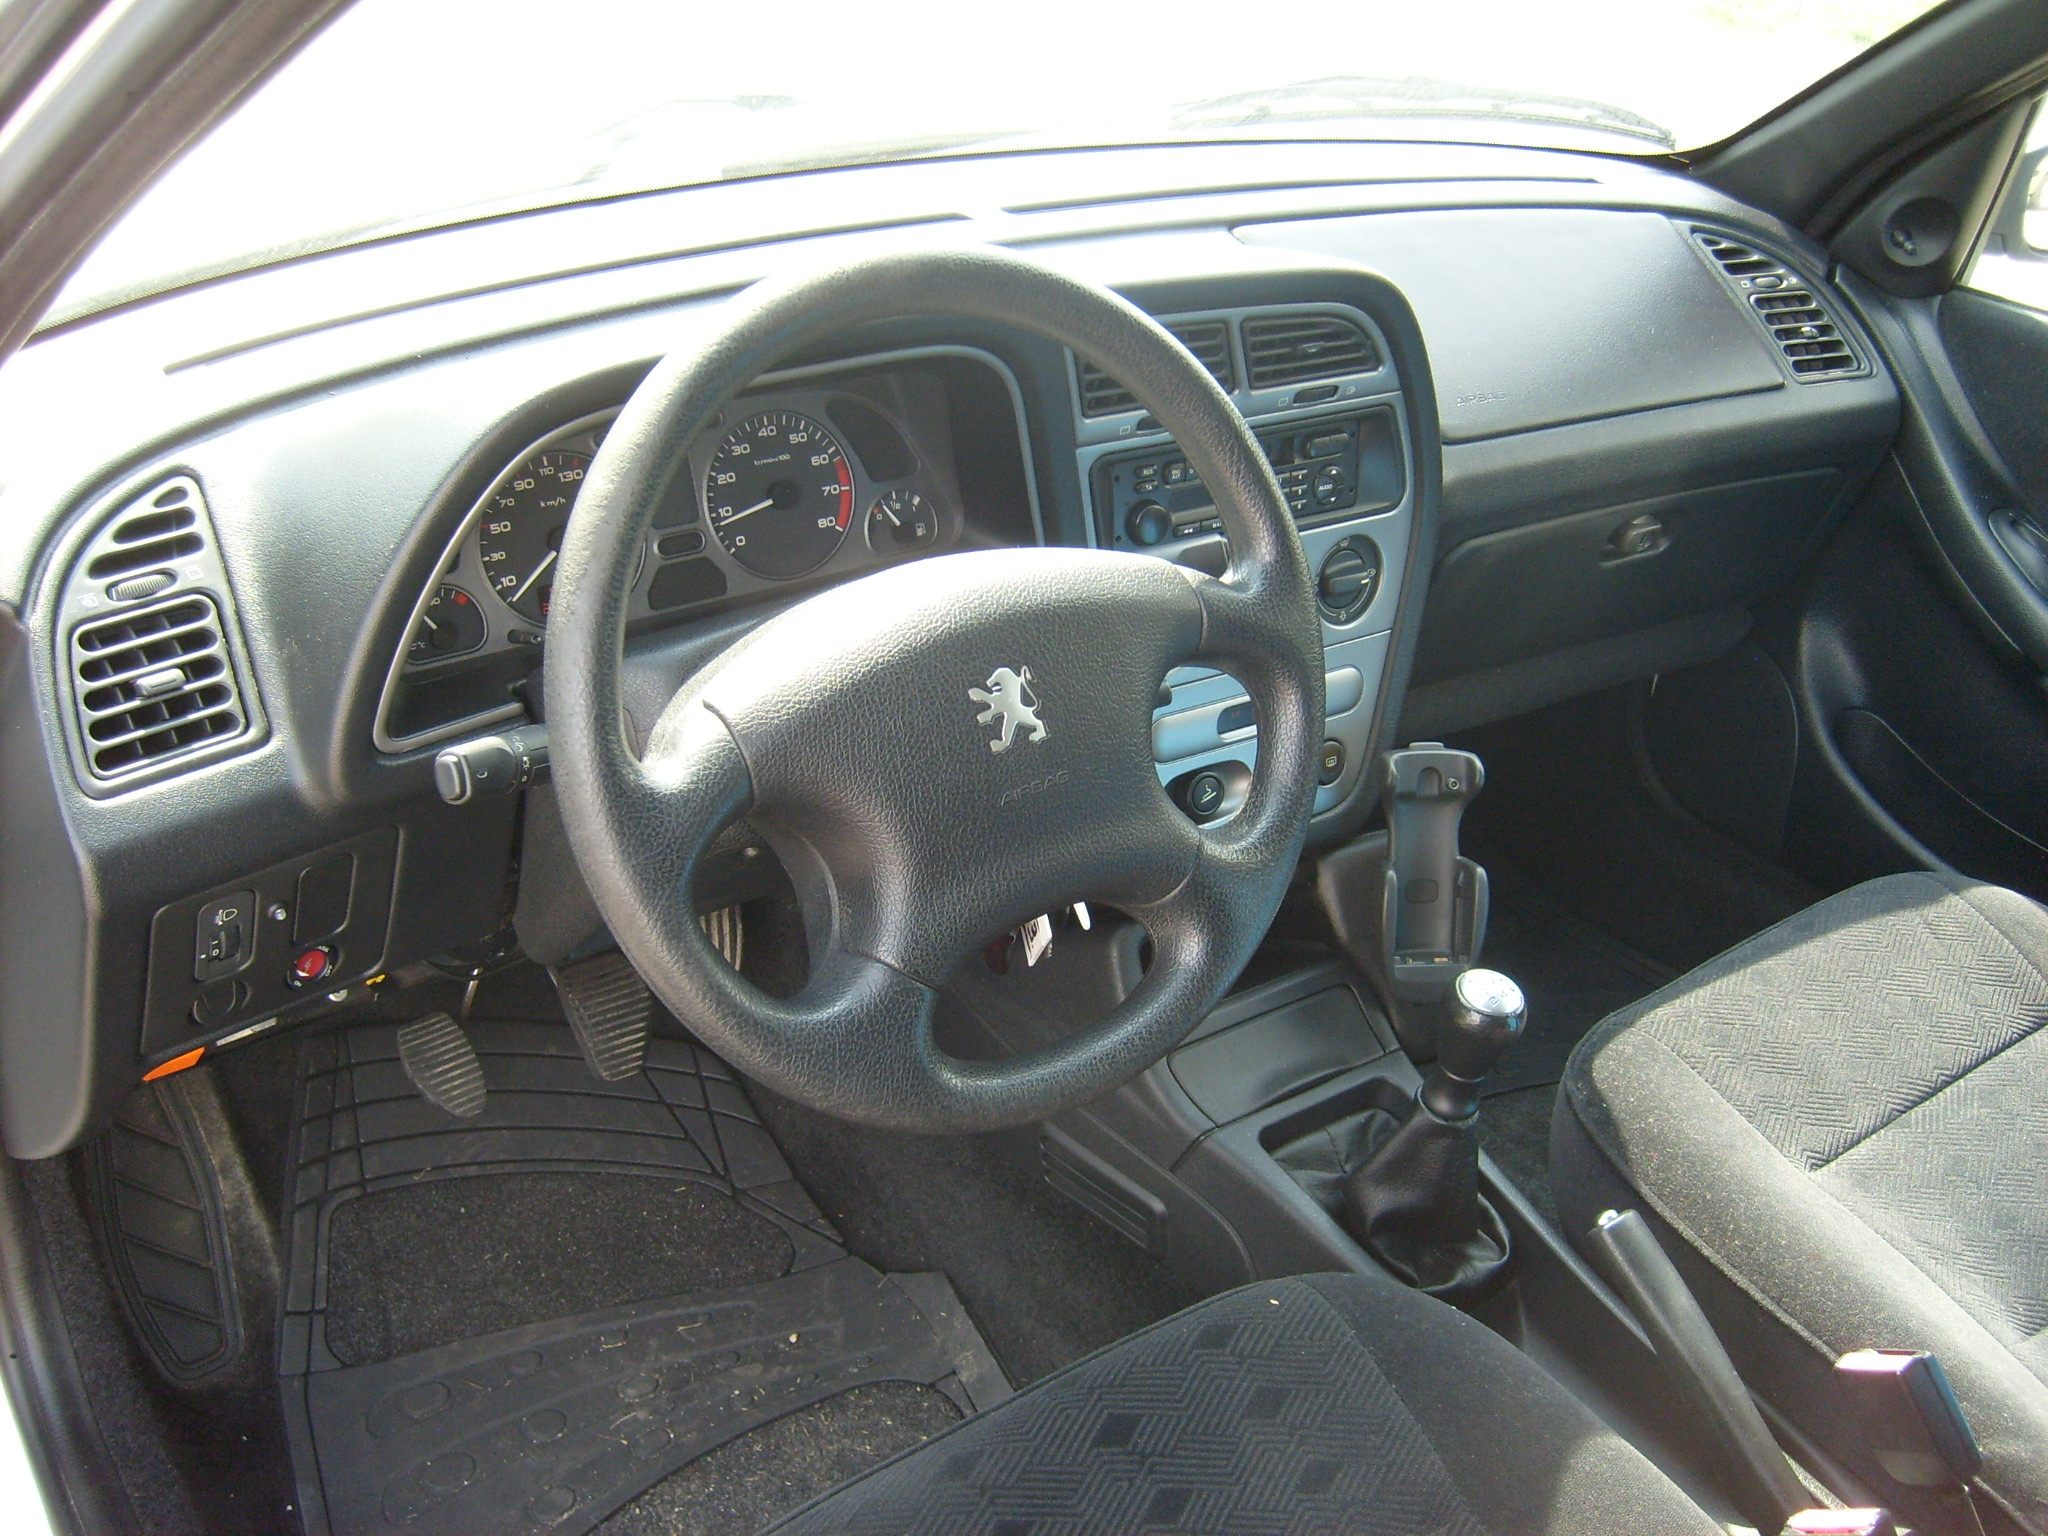 File:Peugeot 306 rear 20080822.jpg - Wikipedia